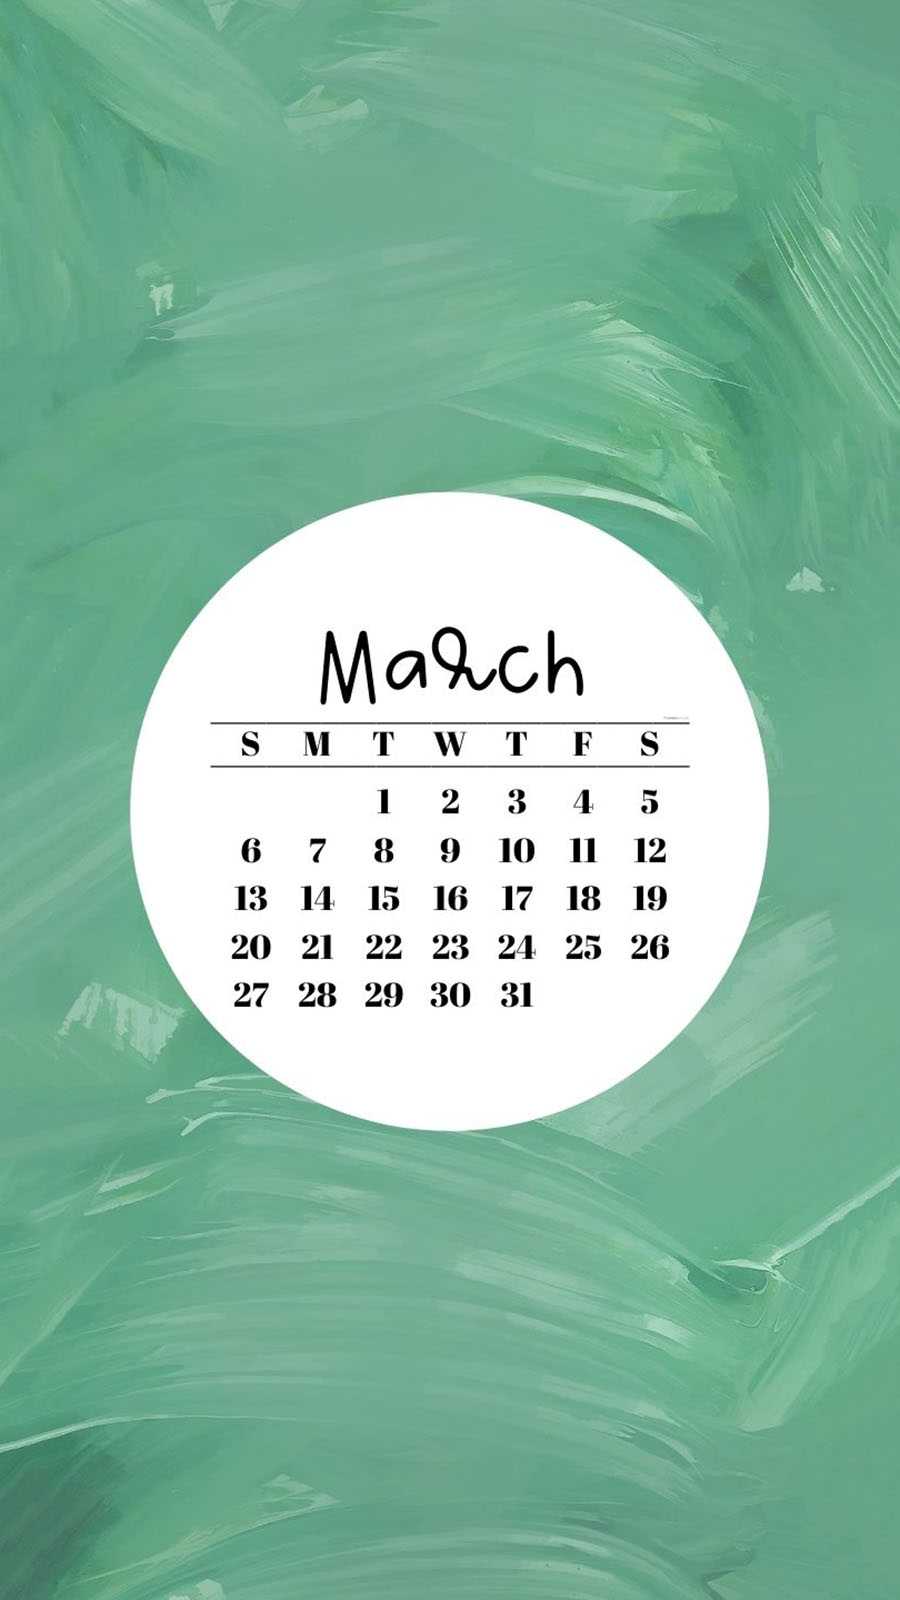 March 2022 Calendar Wallpaper March Calendar Wallpaper 2022 - Ixpap